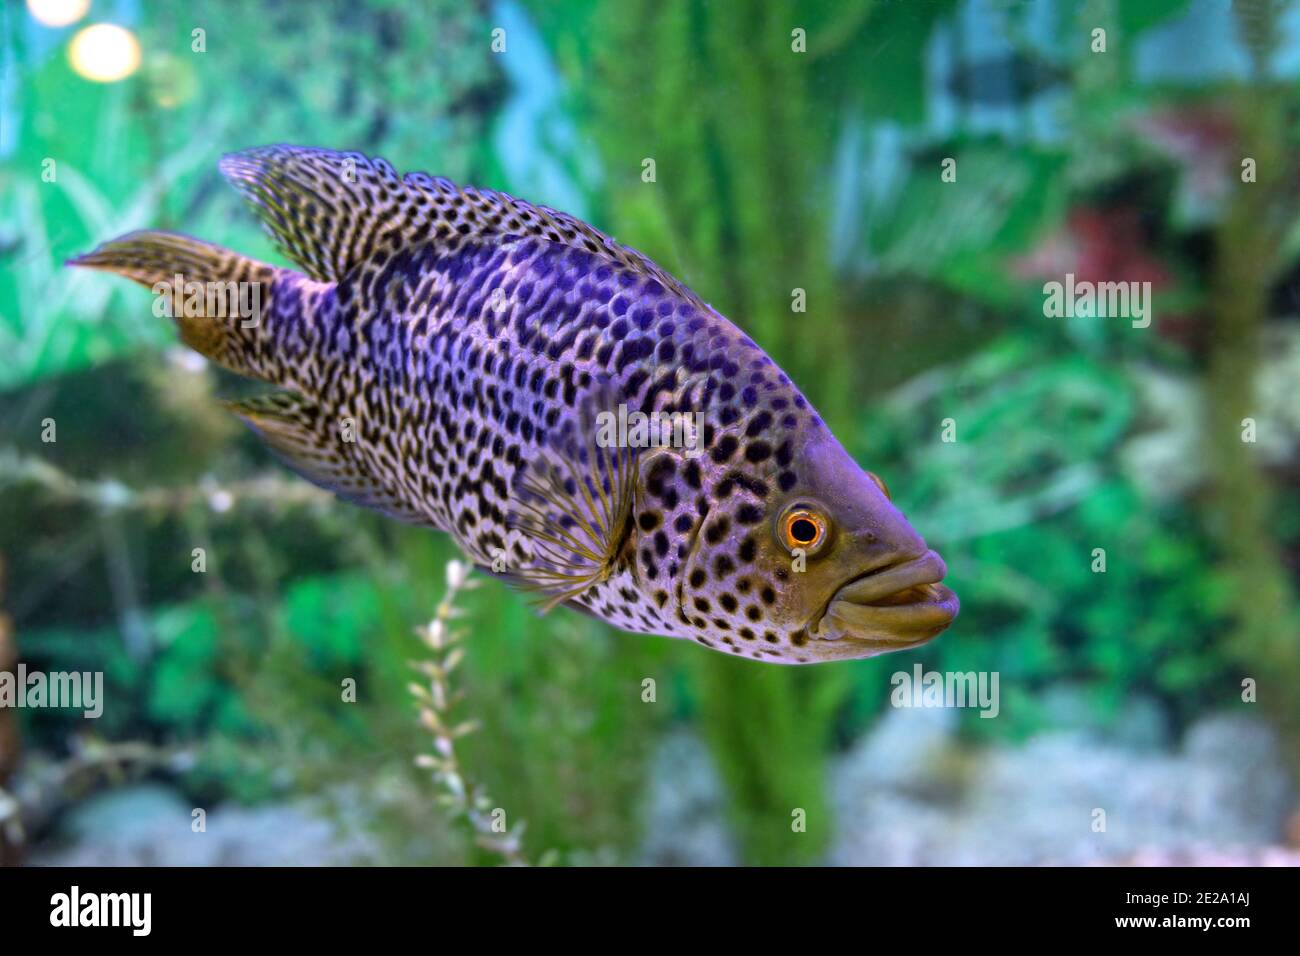 Parachromis managuensis or Managuense Cichlid or cichlid jaguar fish on aquarium blur background Stock Photo